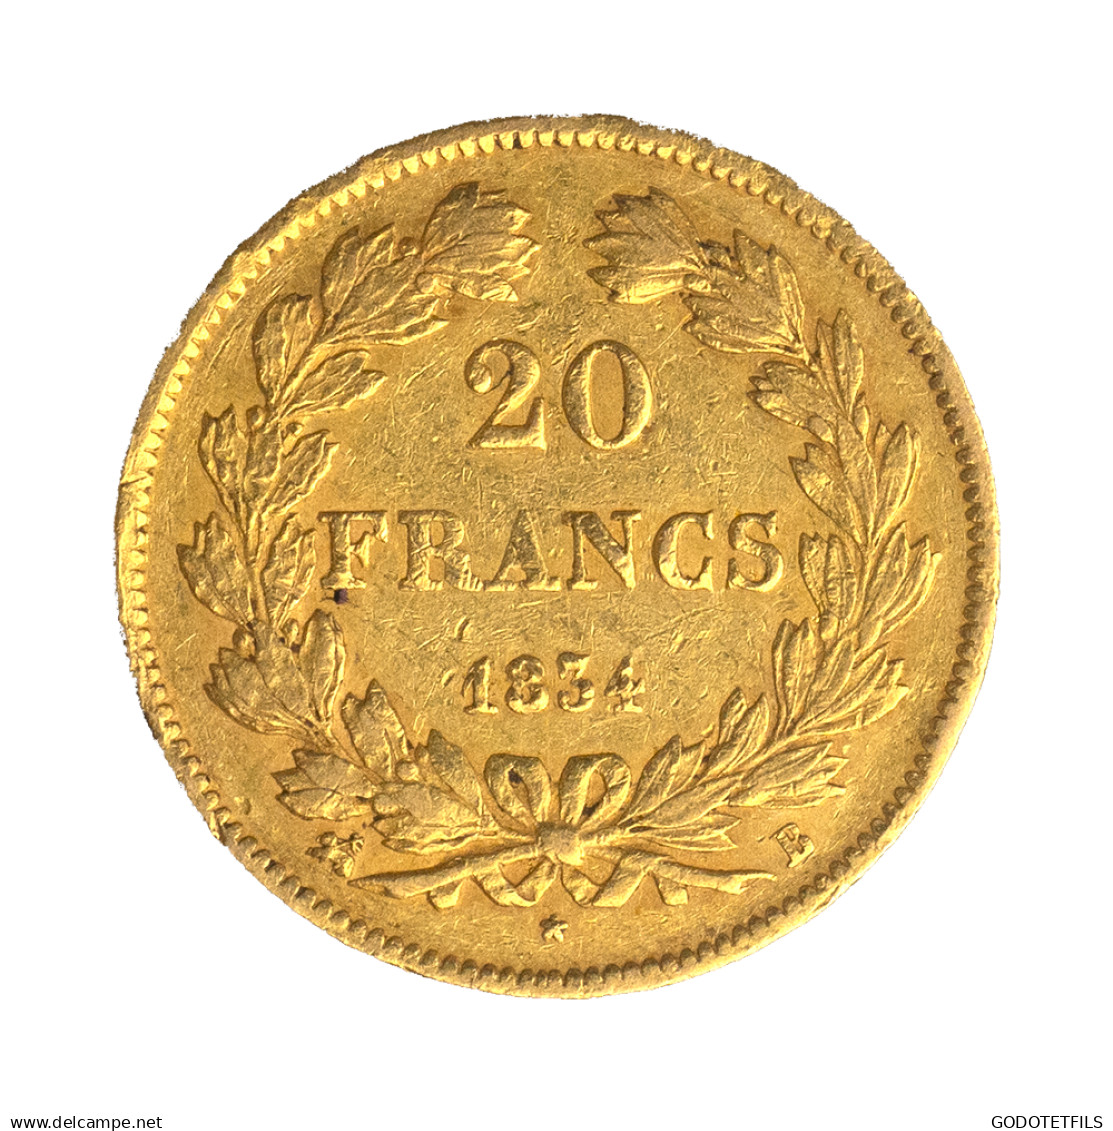 Louis-Philippe-20 Francs 1834 Rouen - 20 Francs (gold)